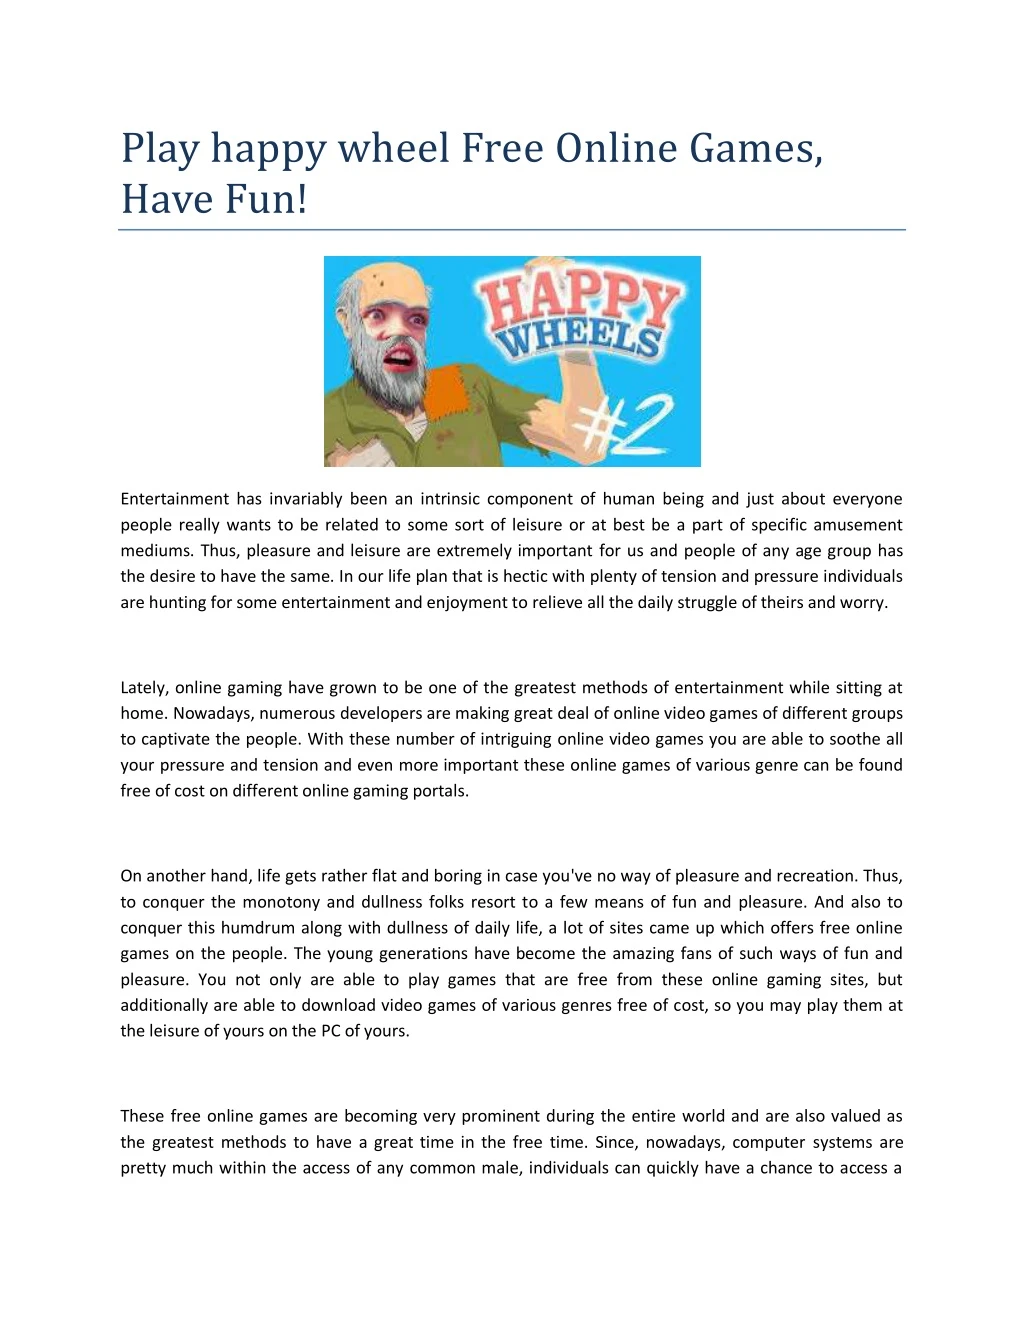 play happy wheel free online games have fun n.